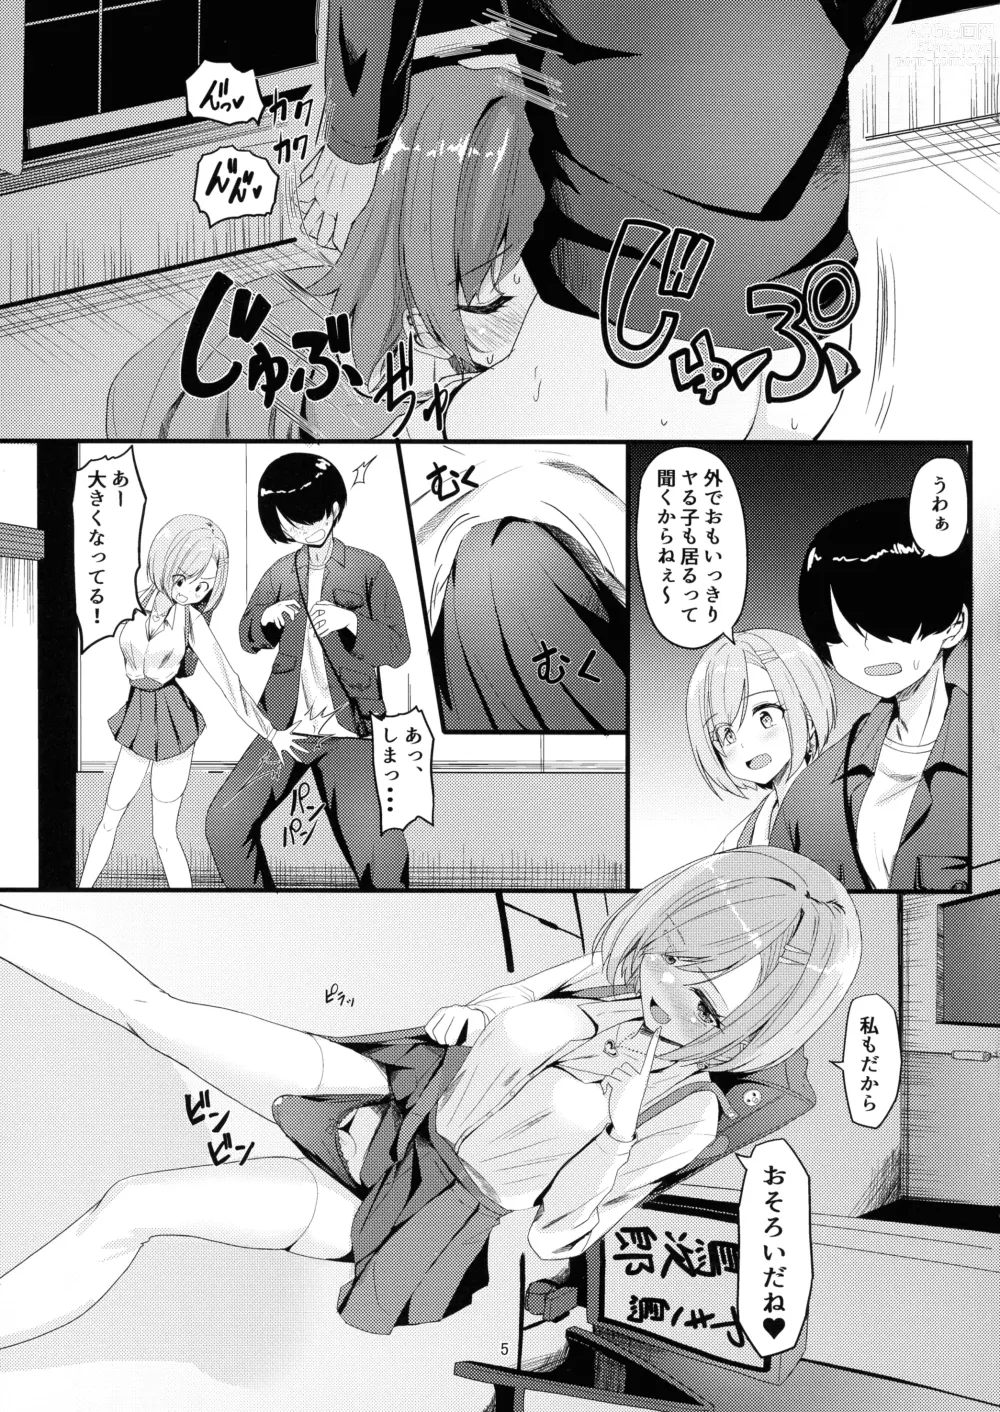 Page 5 of doujinshi Milk Uri no Shoujo